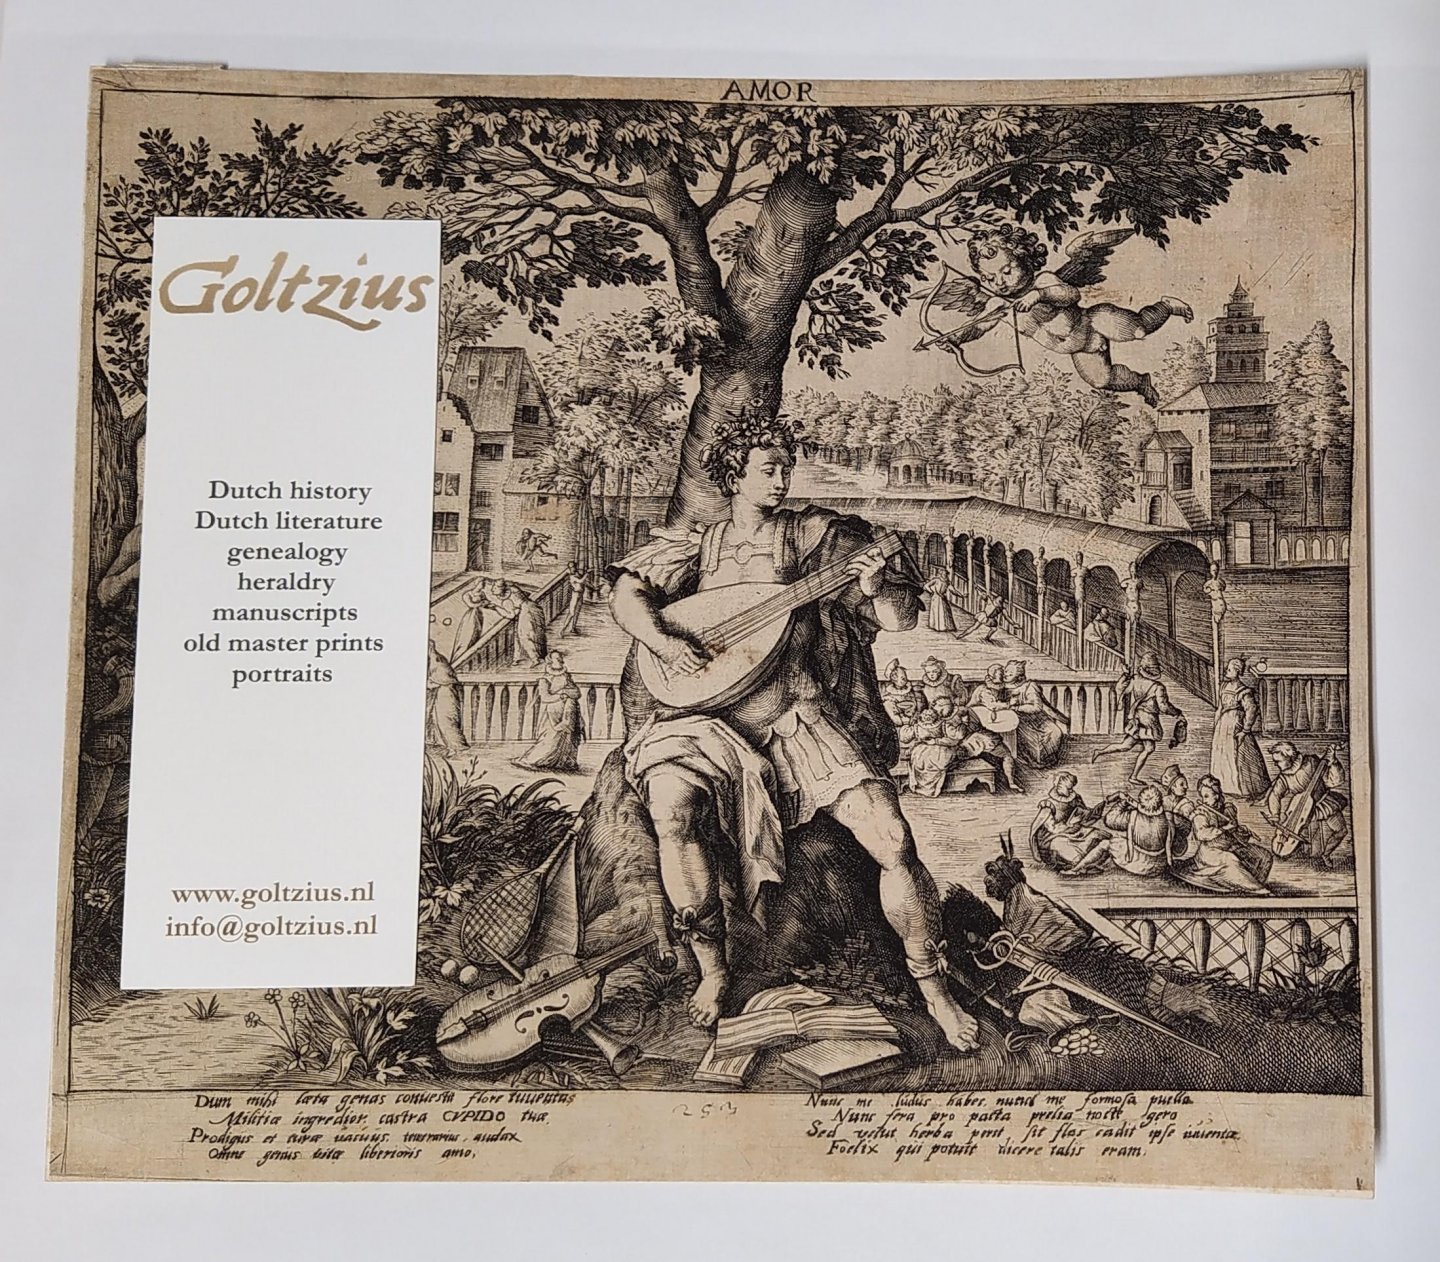 copy after Vos, Maarten de (1532-1603) after Sadeler, Raphael I (1560-1632) - AMOR (four allegorical prints)